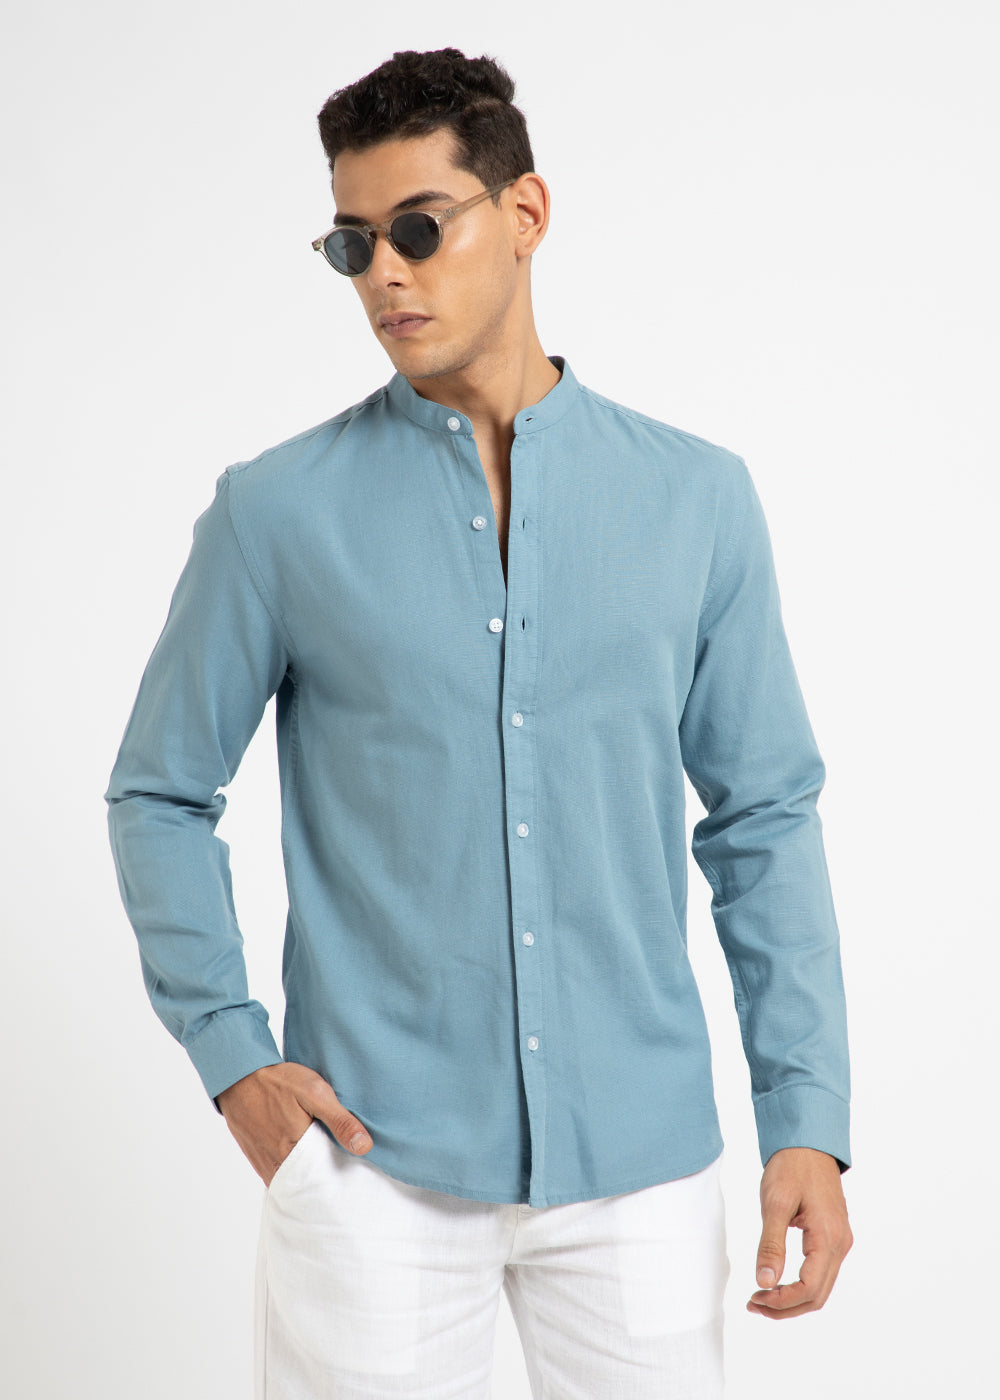 Scuba Blue Cotton Linen Shirt